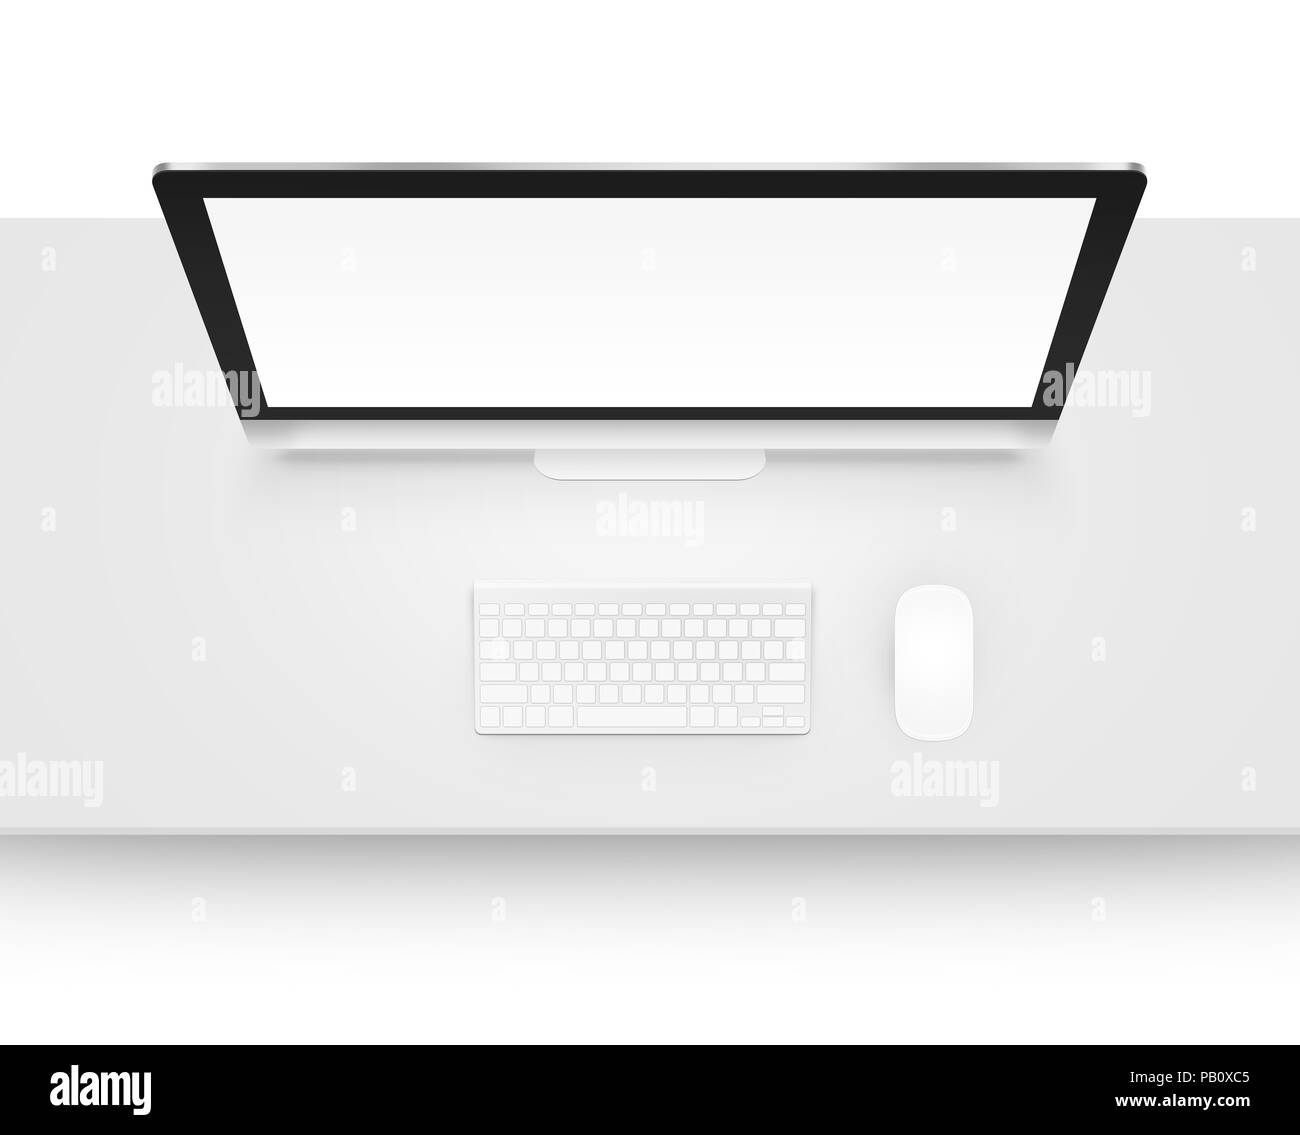 Maquette d'affichage de l'ordinateur avec clavier et souris de dessus isolé. Espace de bureau avec pc immersive haut. Modèle de travail créateur au sommet. Scre vierge Banque D'Images